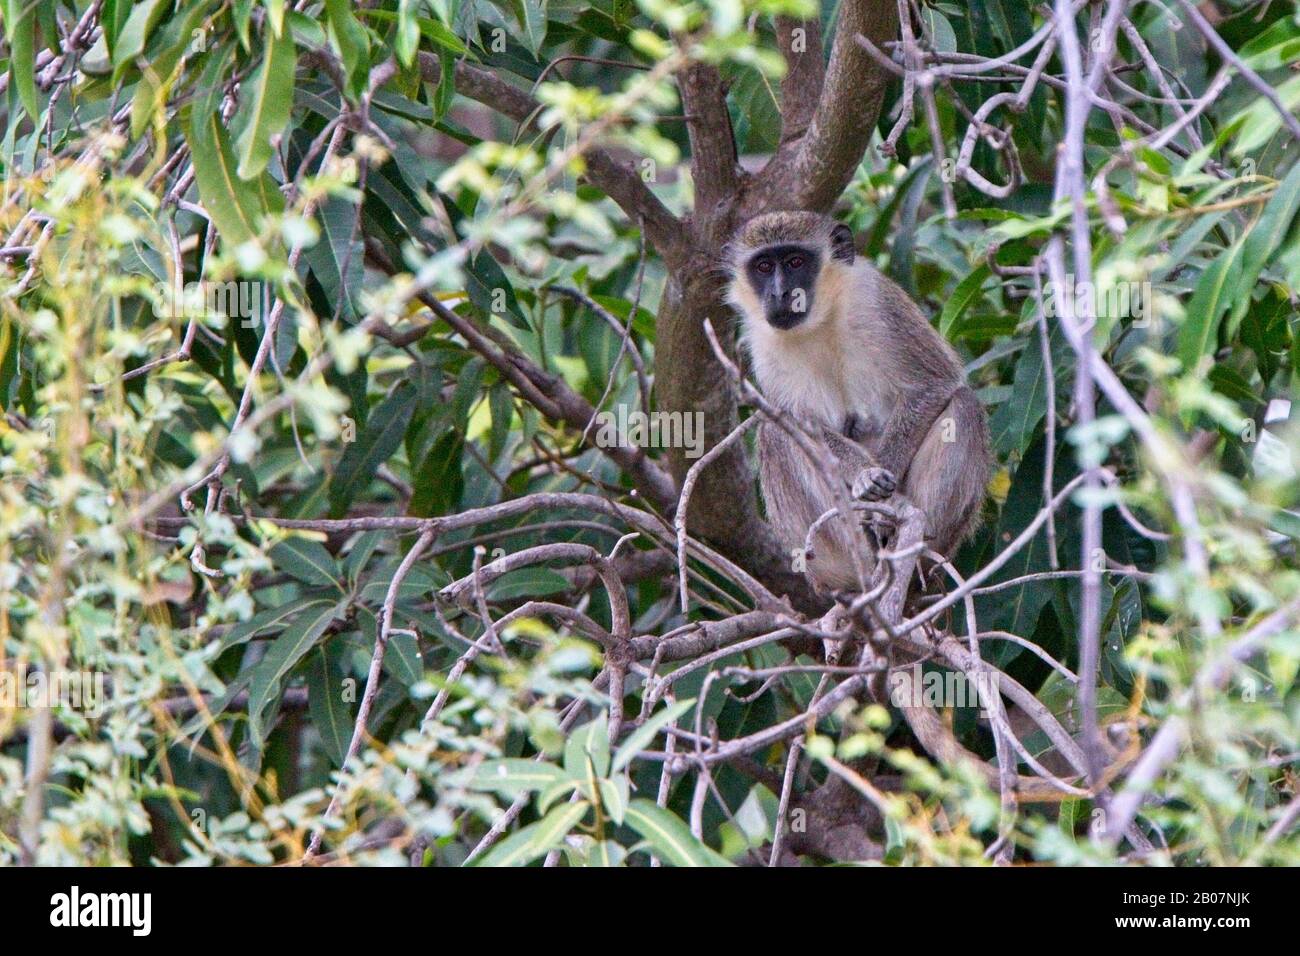 Singe vert (Chlorocebus sabaeus) adulte dans un arbre, Gambie. Banque D'Images